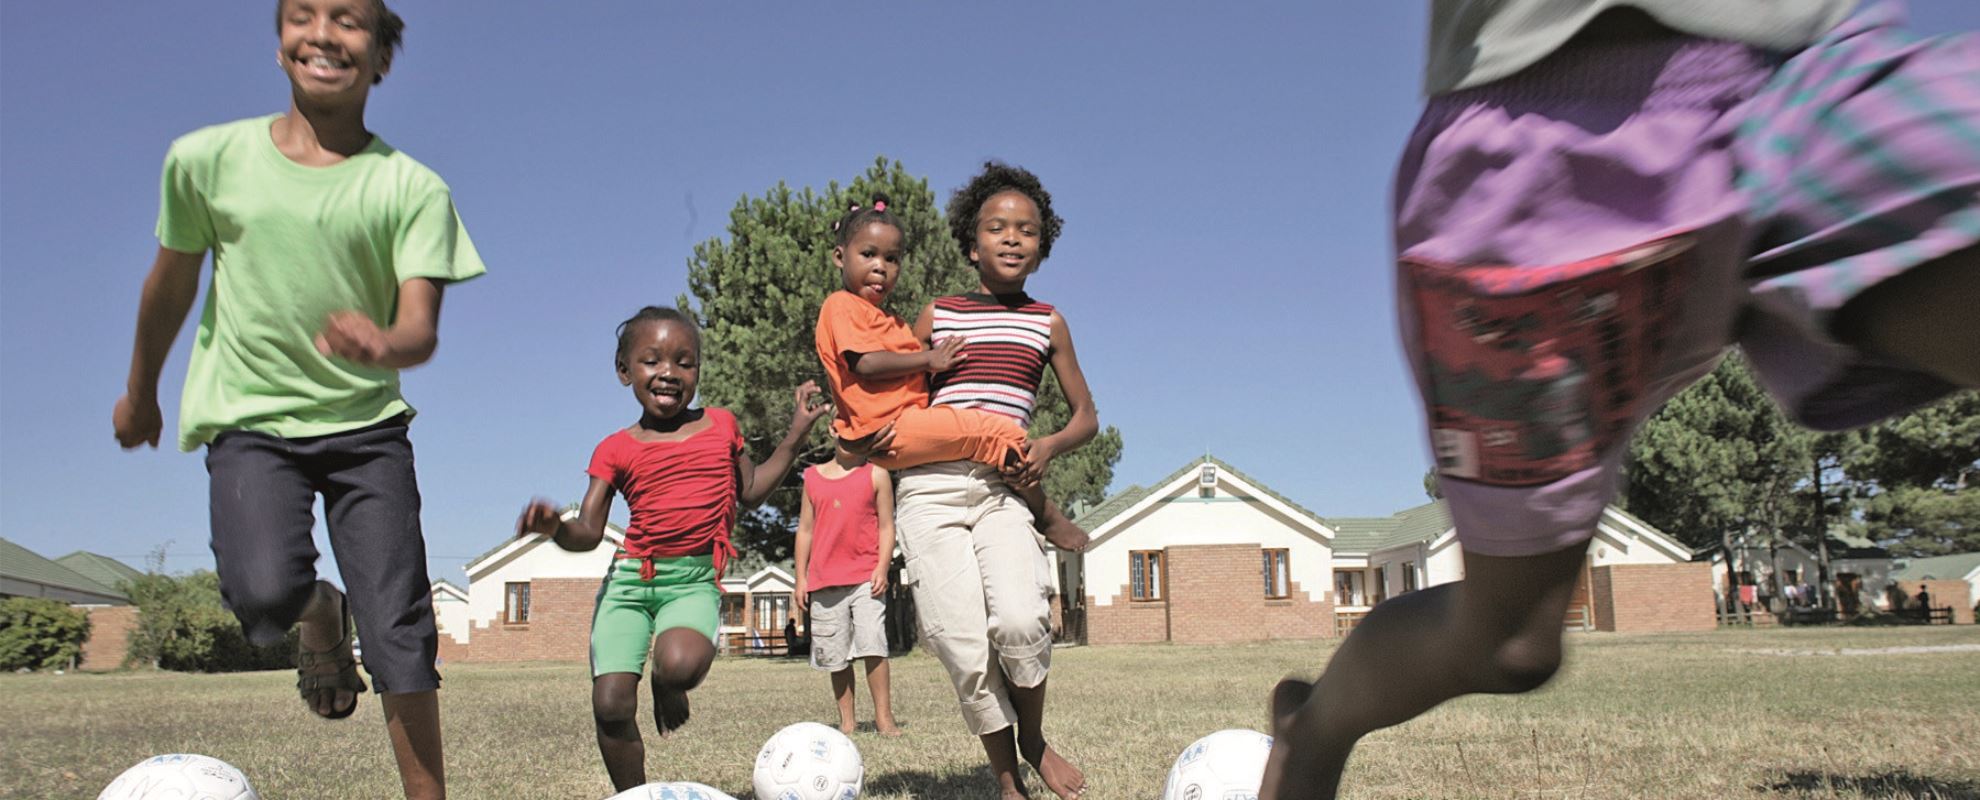 I SOS-barnebyene er det fotballbaner som både barna i barnebyen og fra lokalsamfunnet kan bruke. Foto: Patrick Wittman